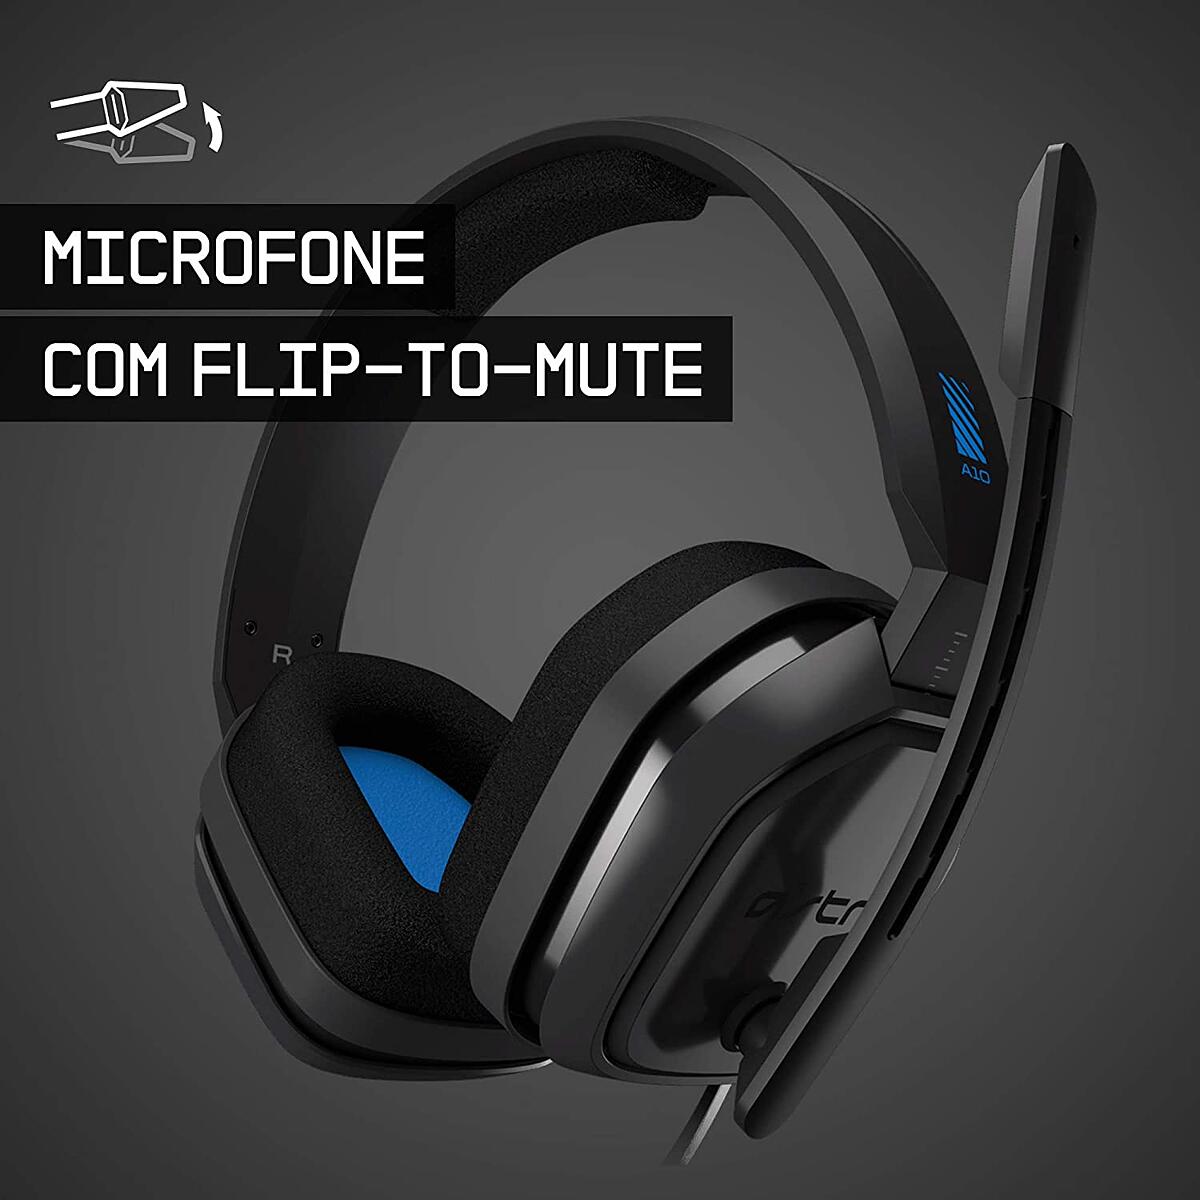 Headset Astro Gaming A10 Preto/Azul Multiplataforma Projetado para Jogos e Streaming Microfone Flip-to-Mute 939-001838